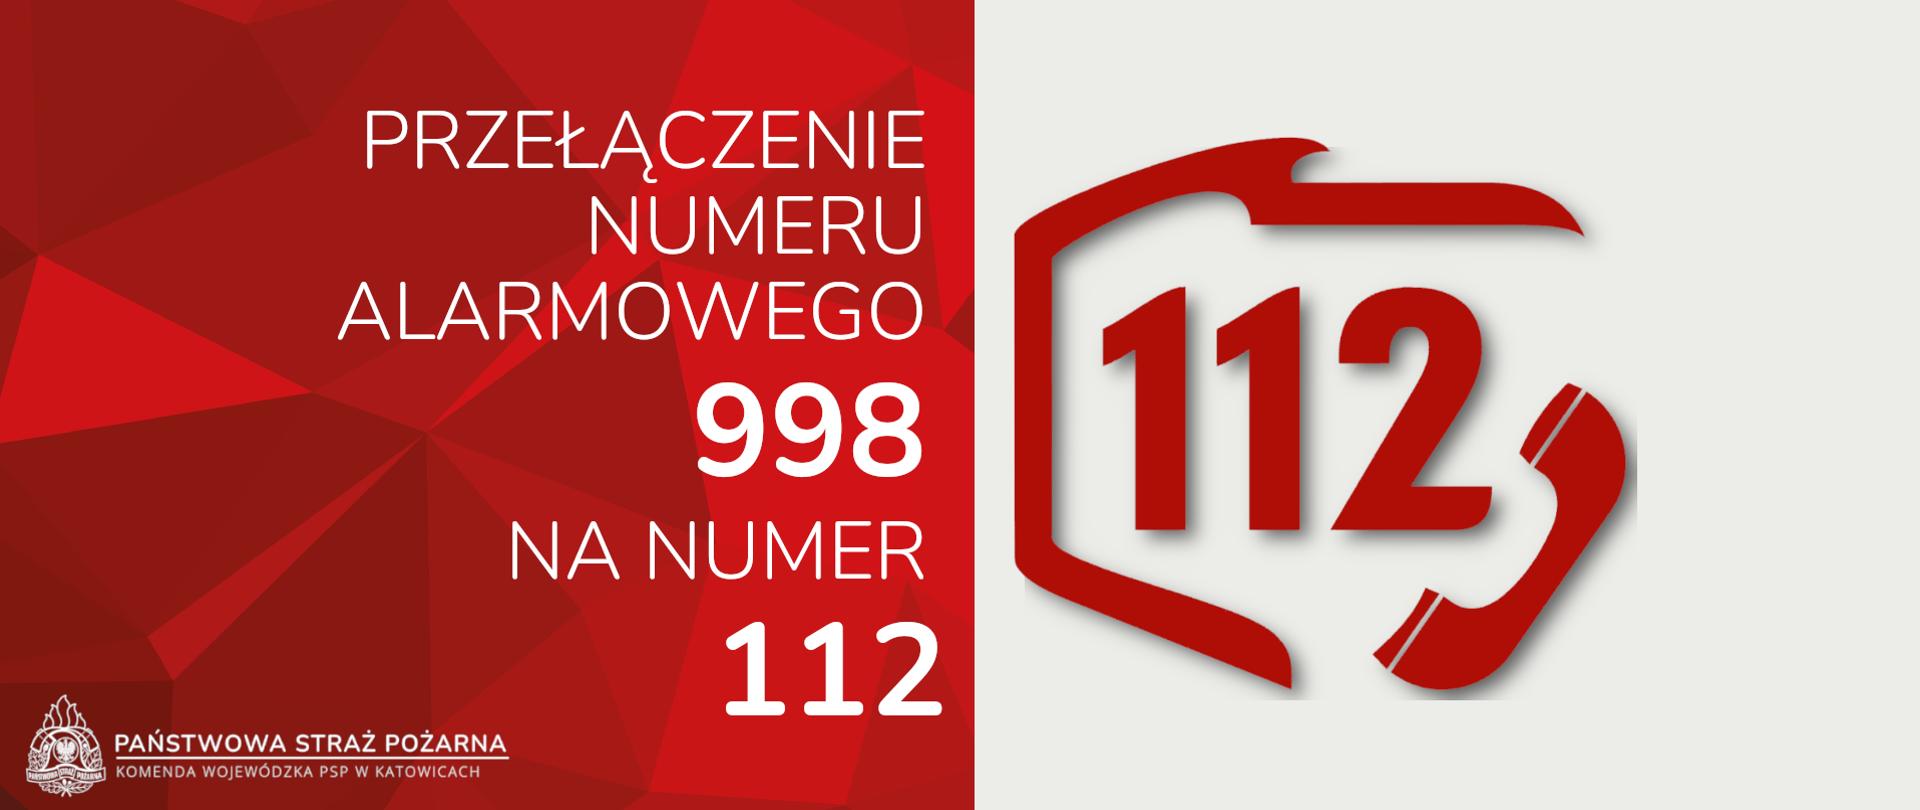 grafika przedstawia po lewej stronie na czerwonym tle napis "Przełączenie numeru alarmowego 998 na numer 112", logo oraz podpis Państwowa Straż Pożarna Komenda Wojewódzka PSP w Katowicach, po prawej stronie na białym tle numer 112